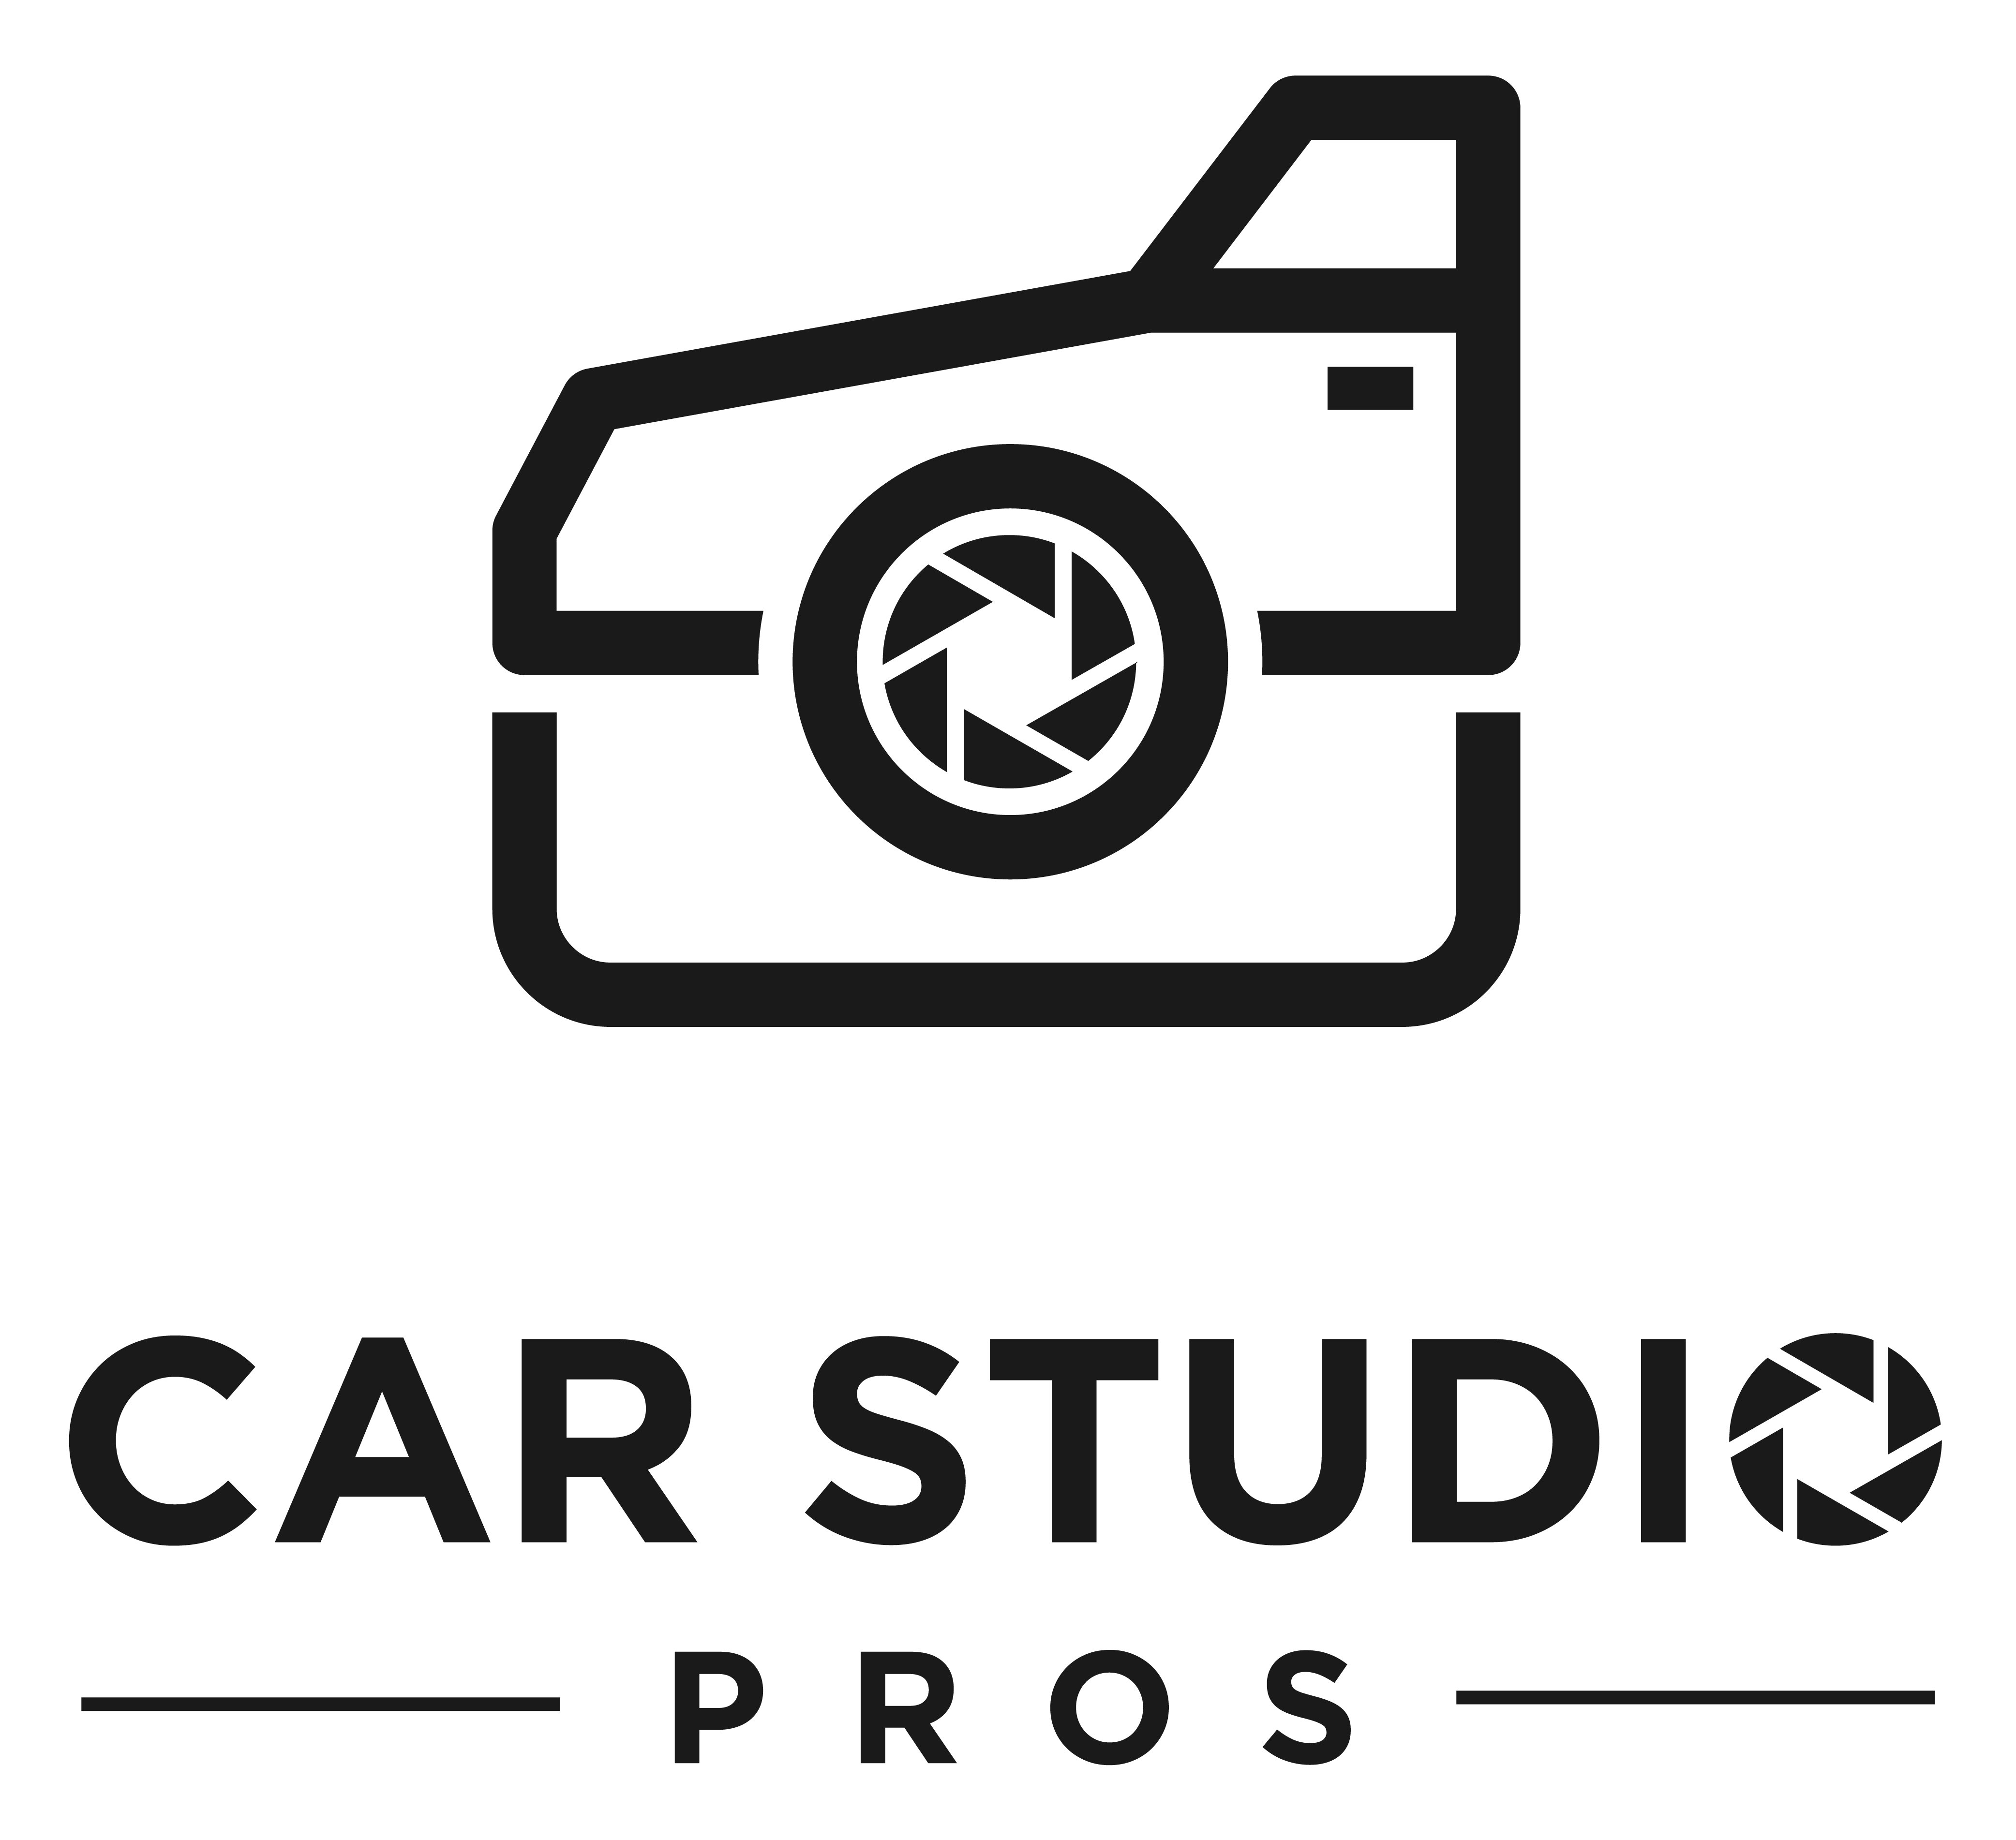 Car Studio Pros